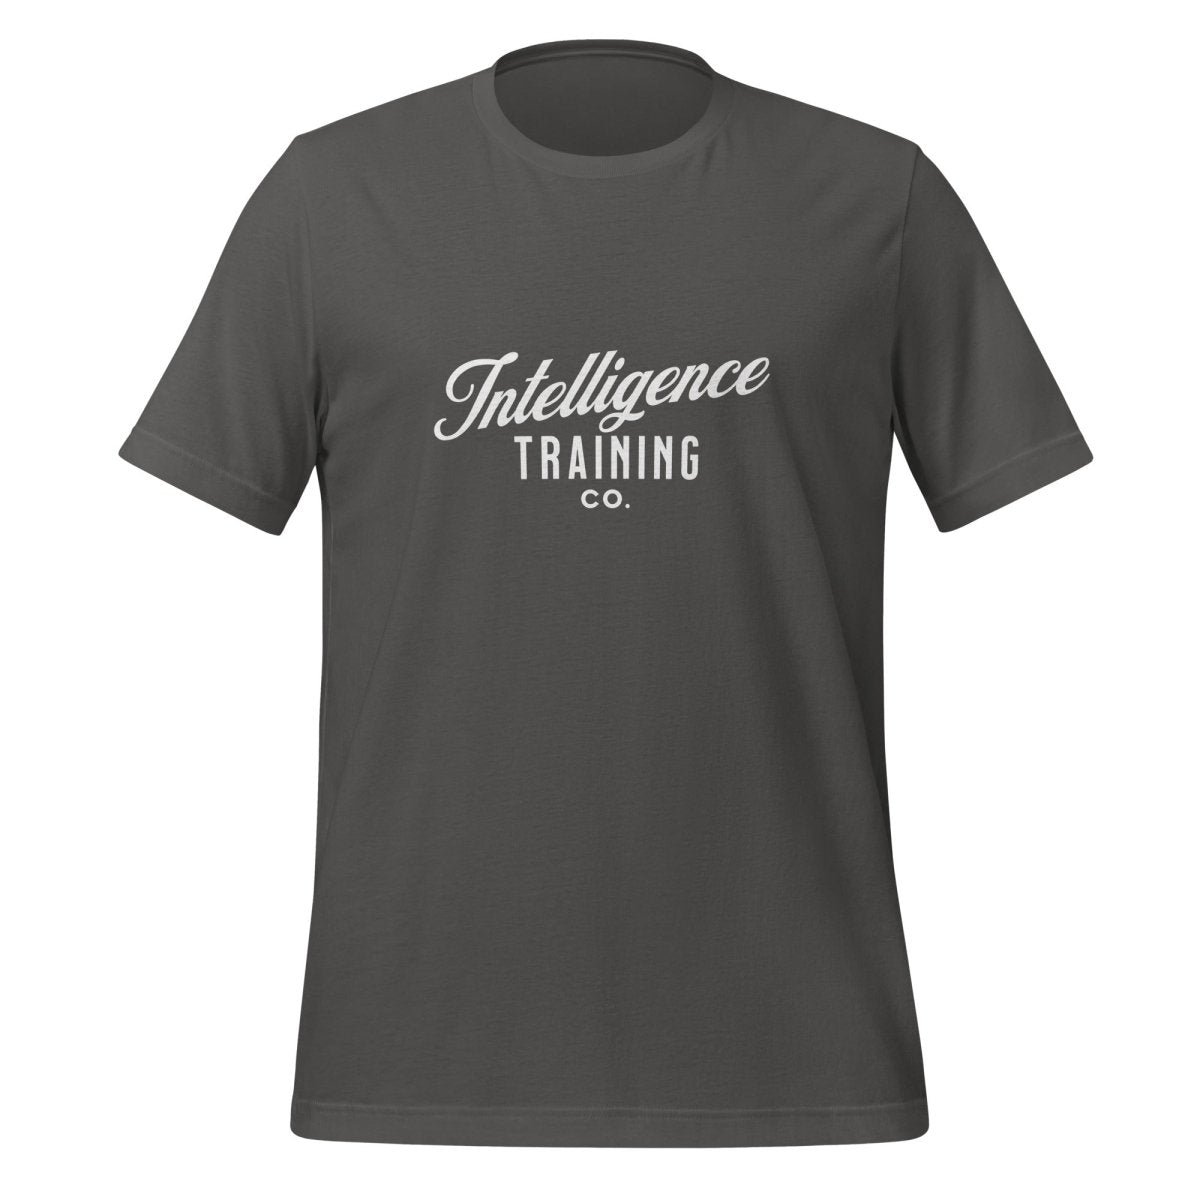 Intelligence Training Co. T - Shirt (unisex) - Asphalt - AI Store